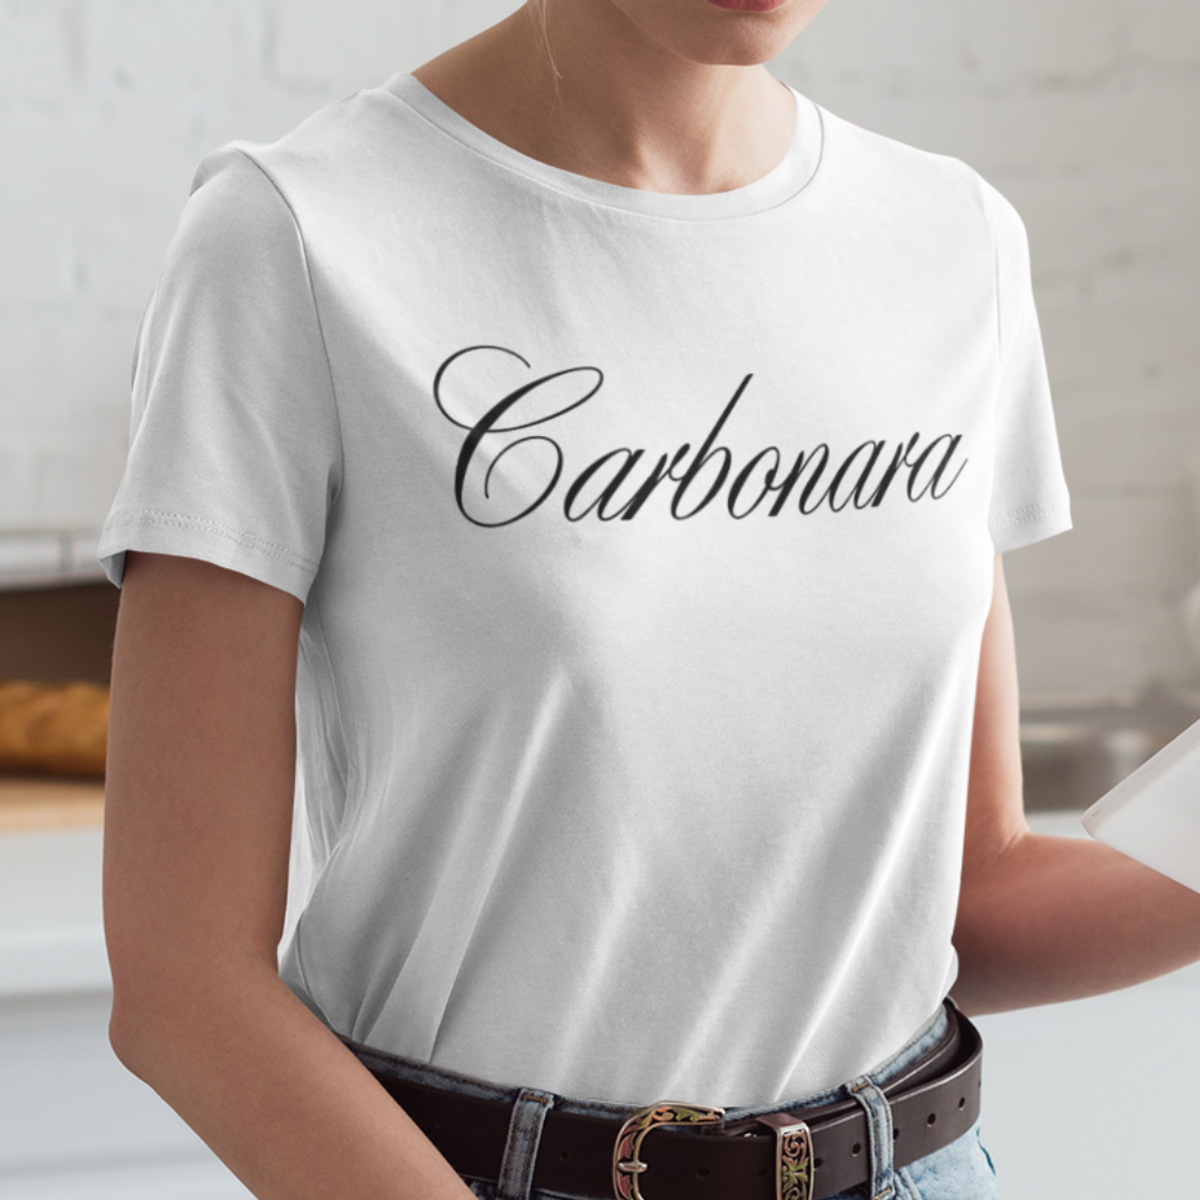 Nome do produto: T-shirt Carbonara